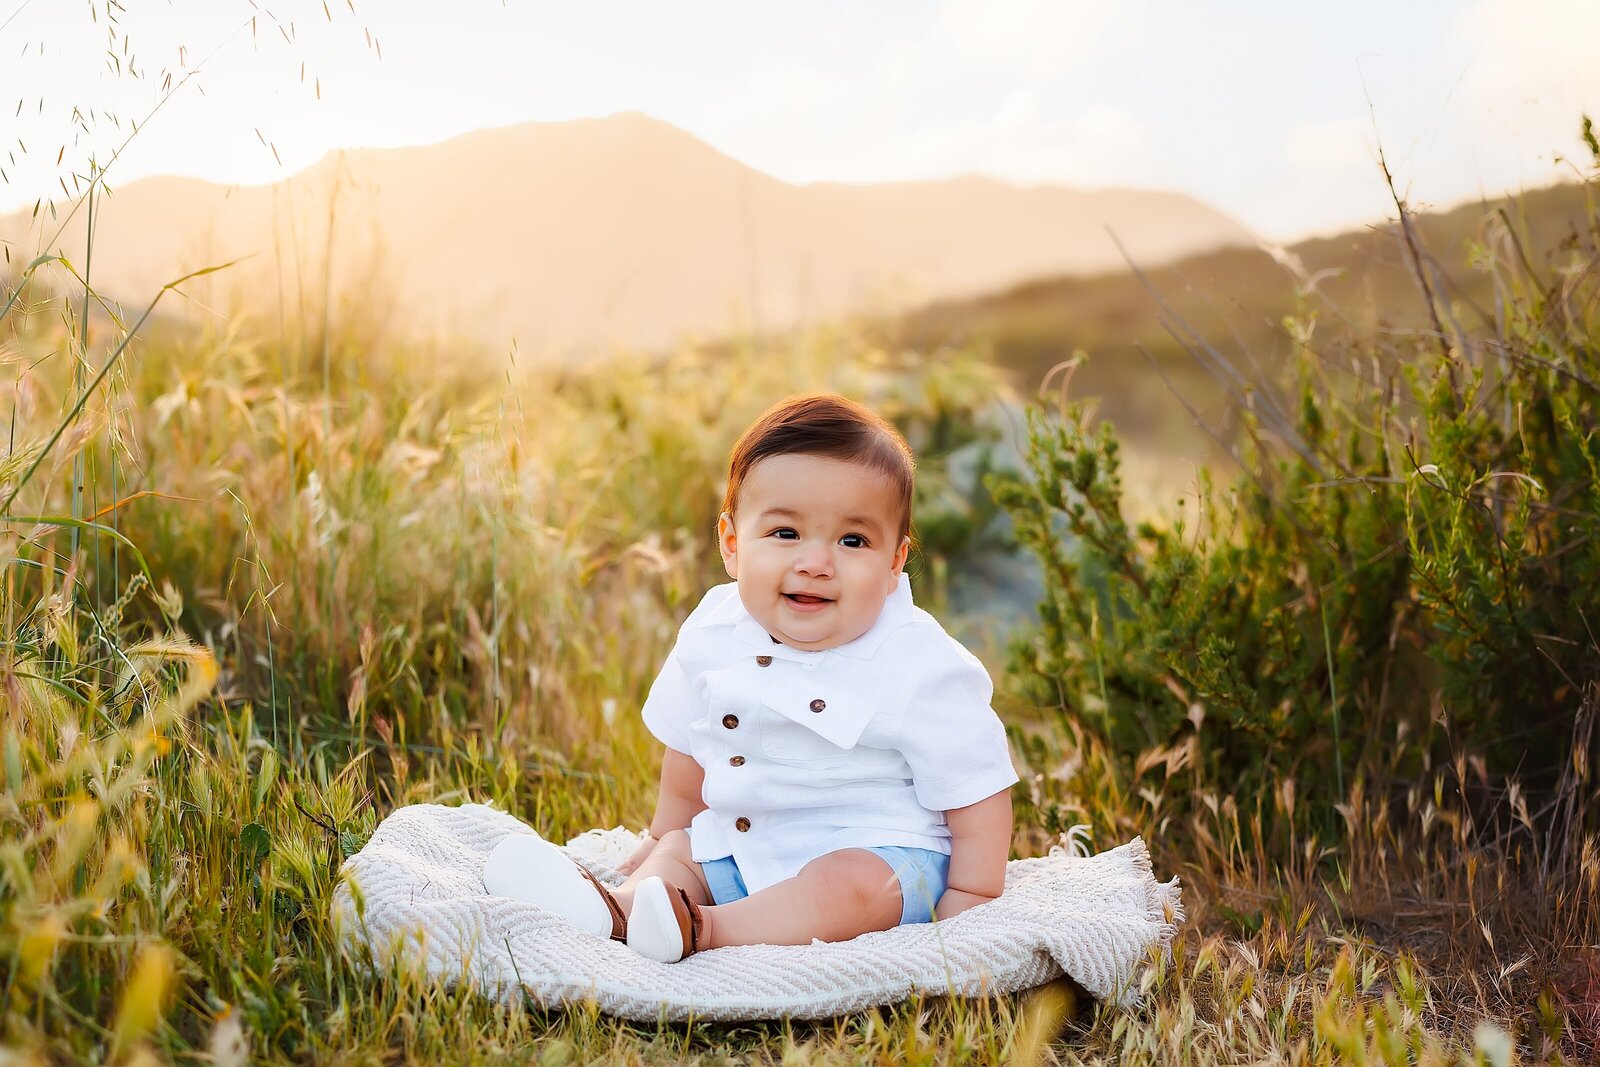 Baby boy sitting on a blanket in a field